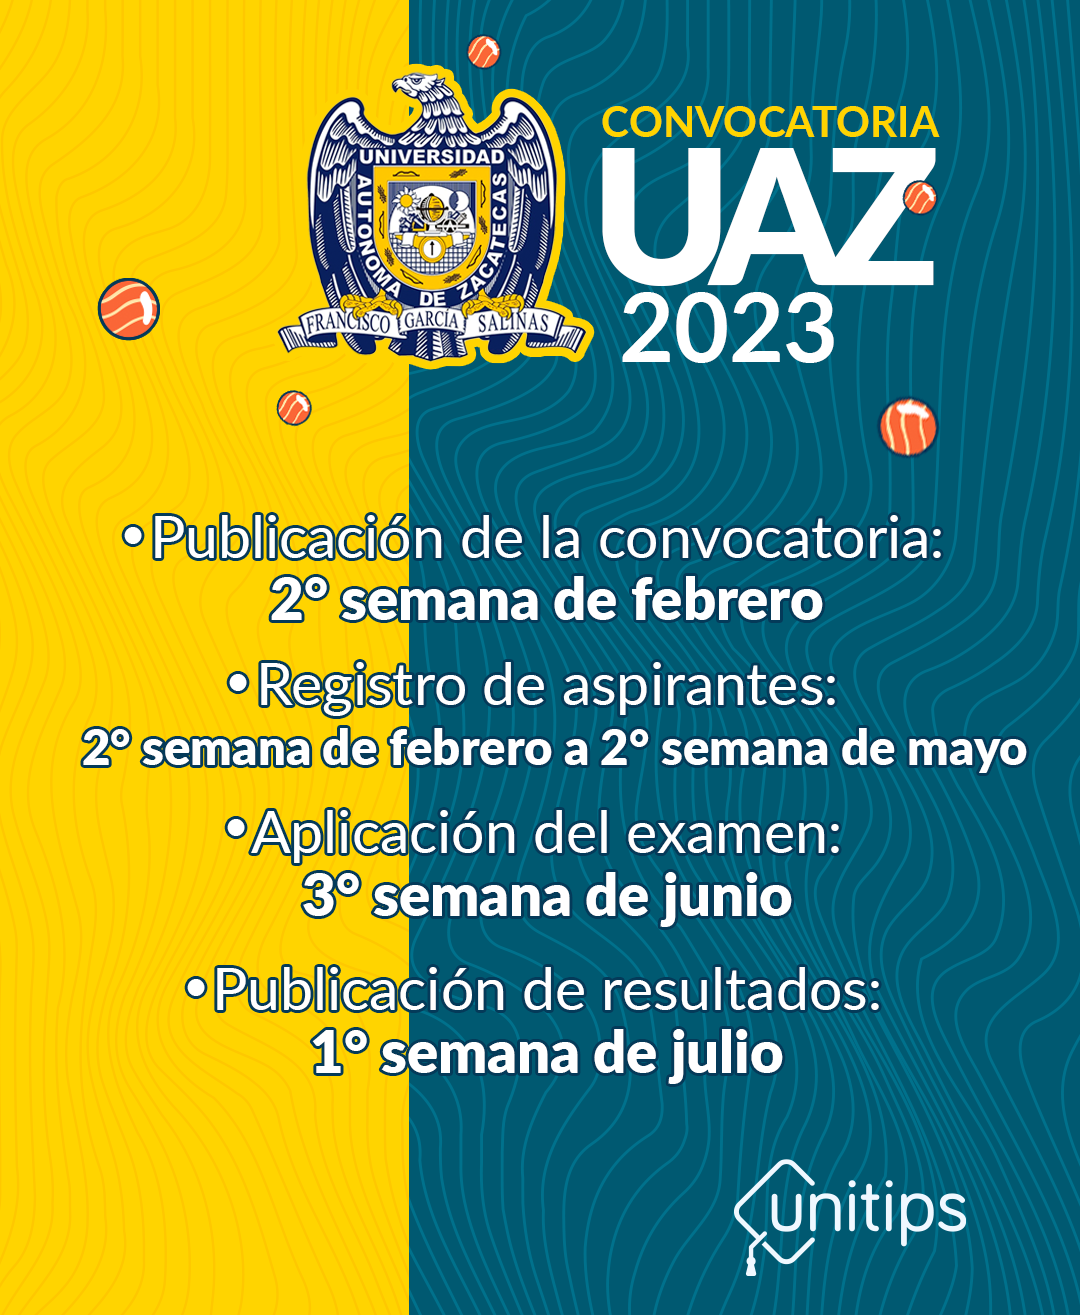 calendario-uaz-2023